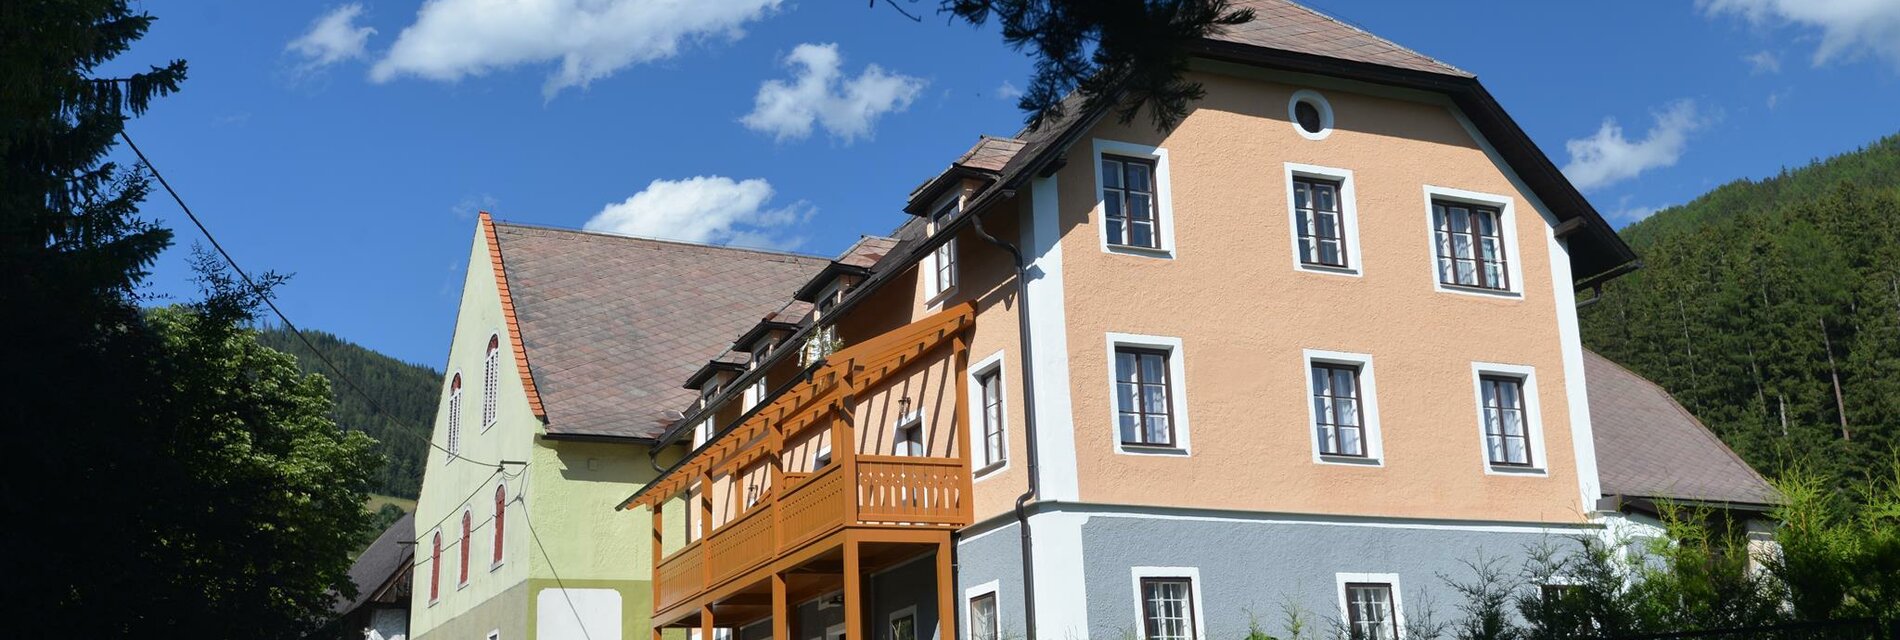 Pirkerhof-Außenansicht-Murtal-Steiermark